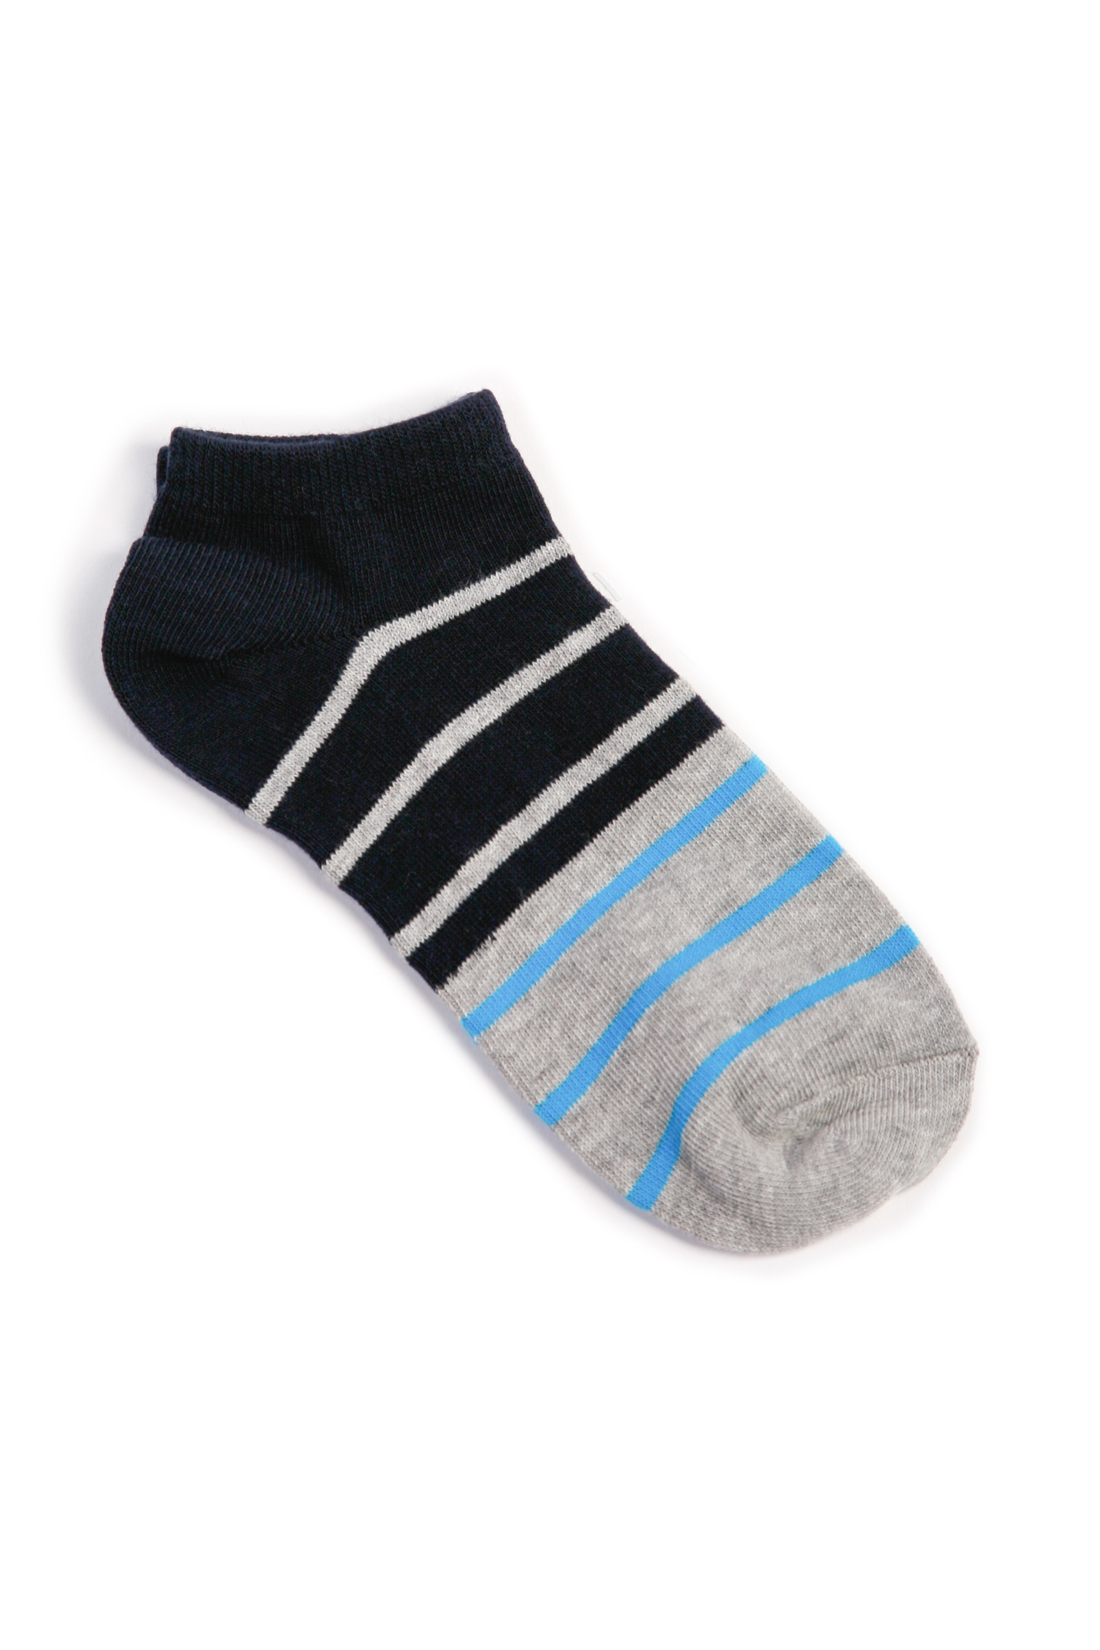 Низкие носки с полосками (арт. baon B398503), размер 38/40, цвет серый